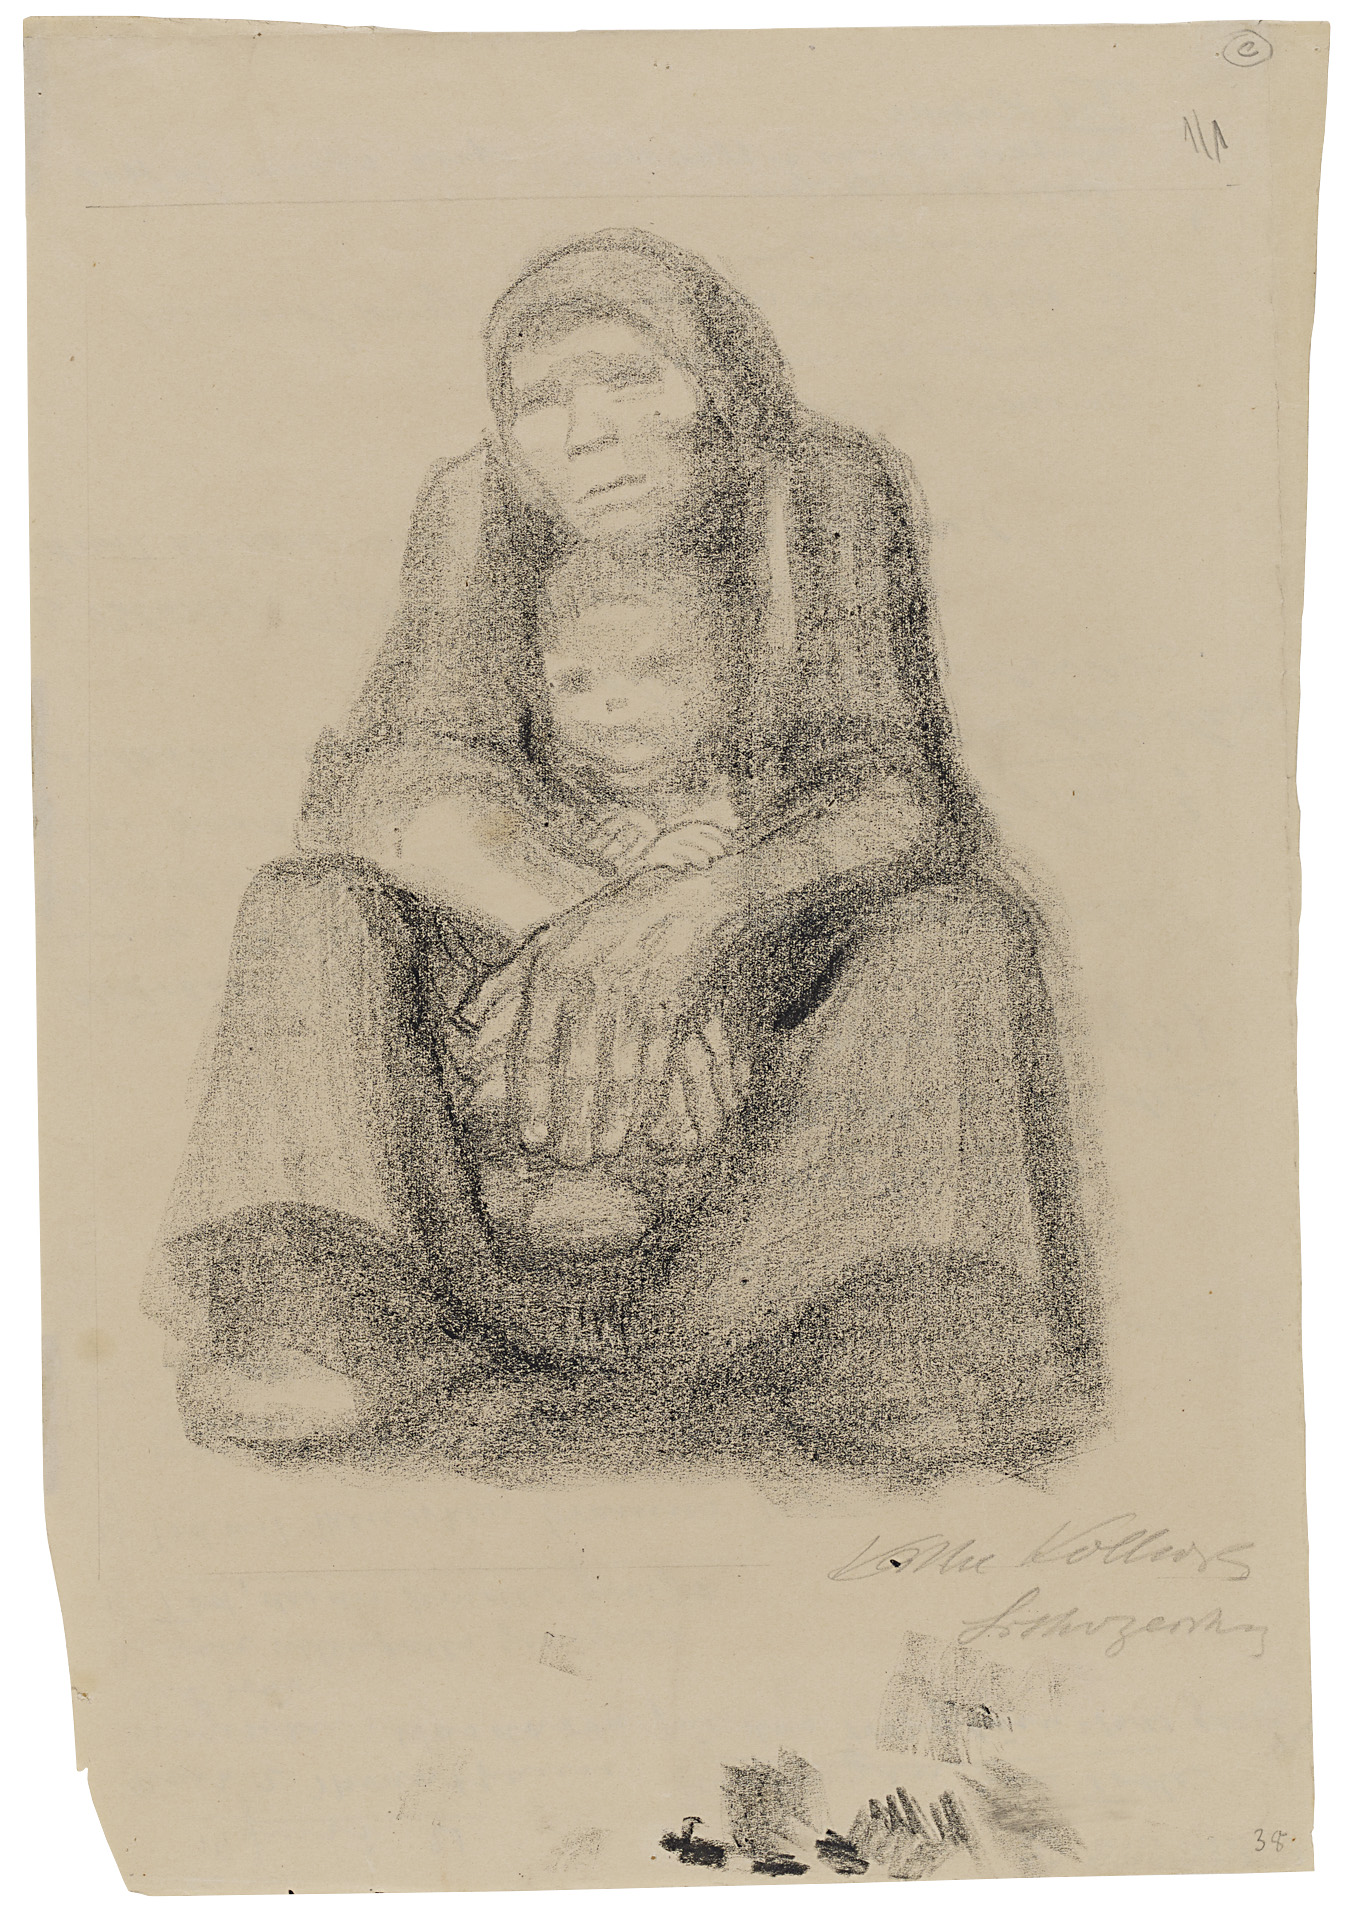 Käthe Kollwitz, Sitzende Frau mit Kind im Schoß, 1921, Lithozeichnung auf bräunlichem Papier, NT 925